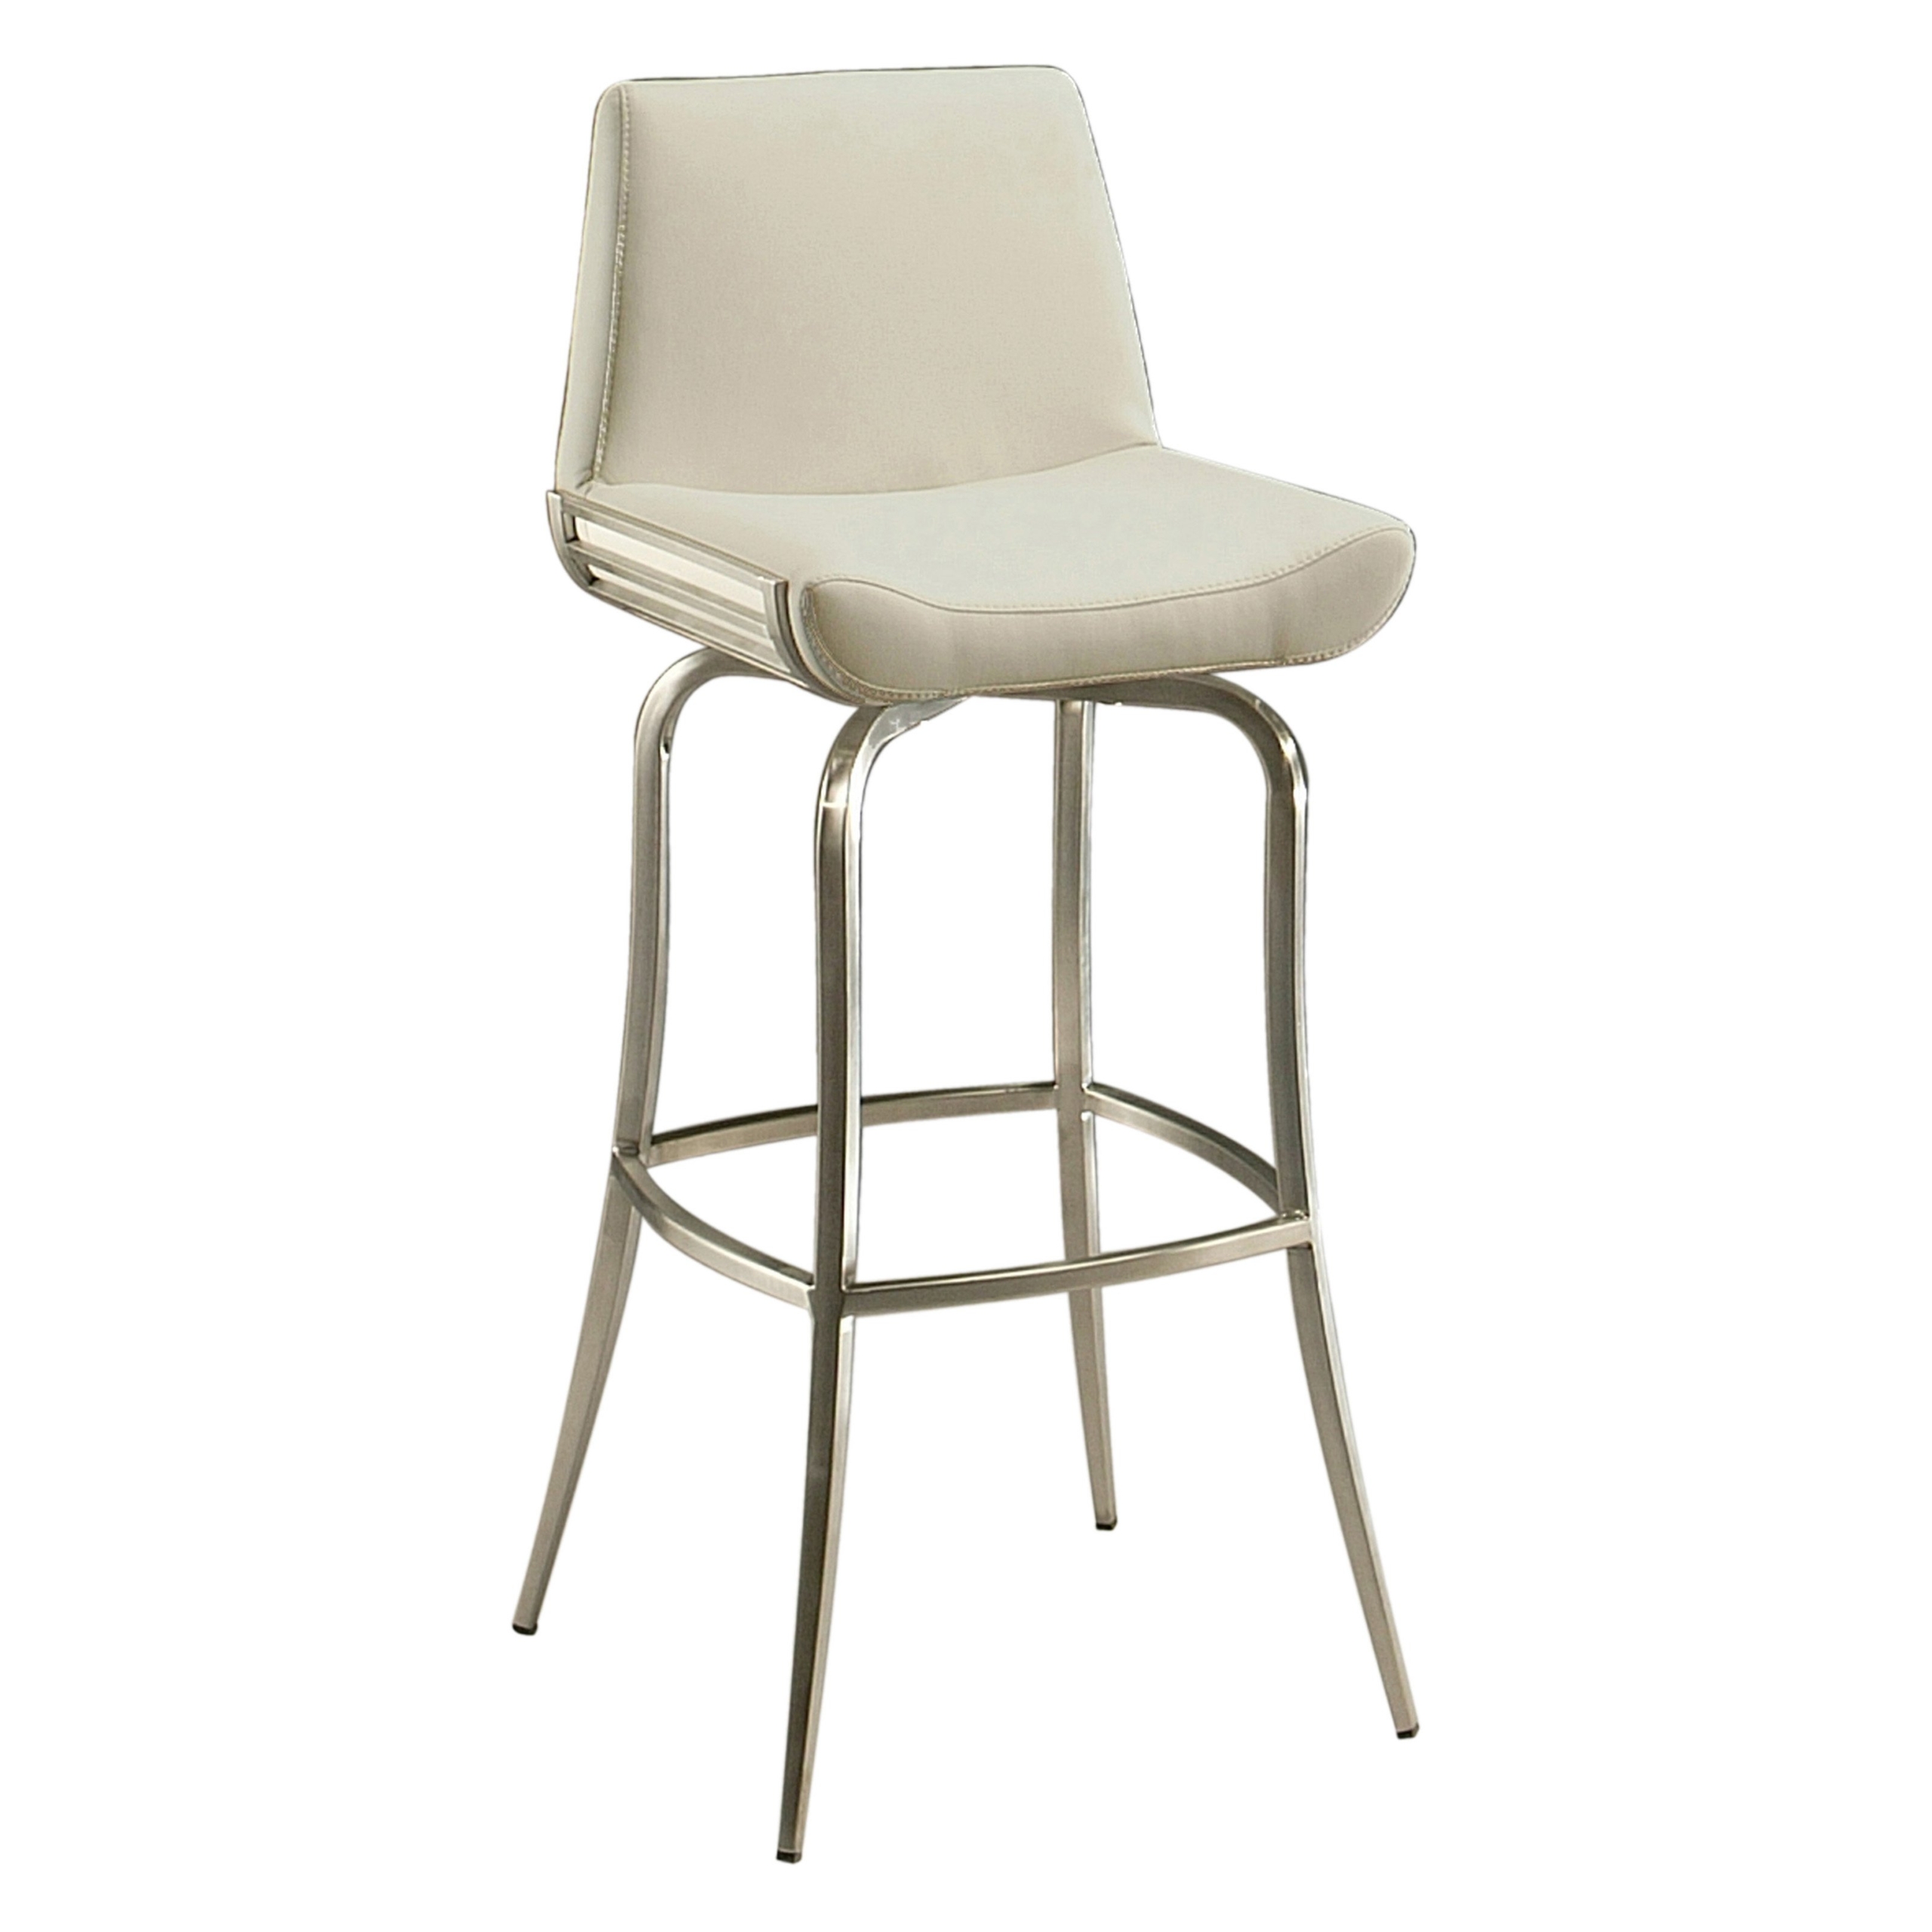 Degorah 26 bar stool in stainless steel upholstered in pu